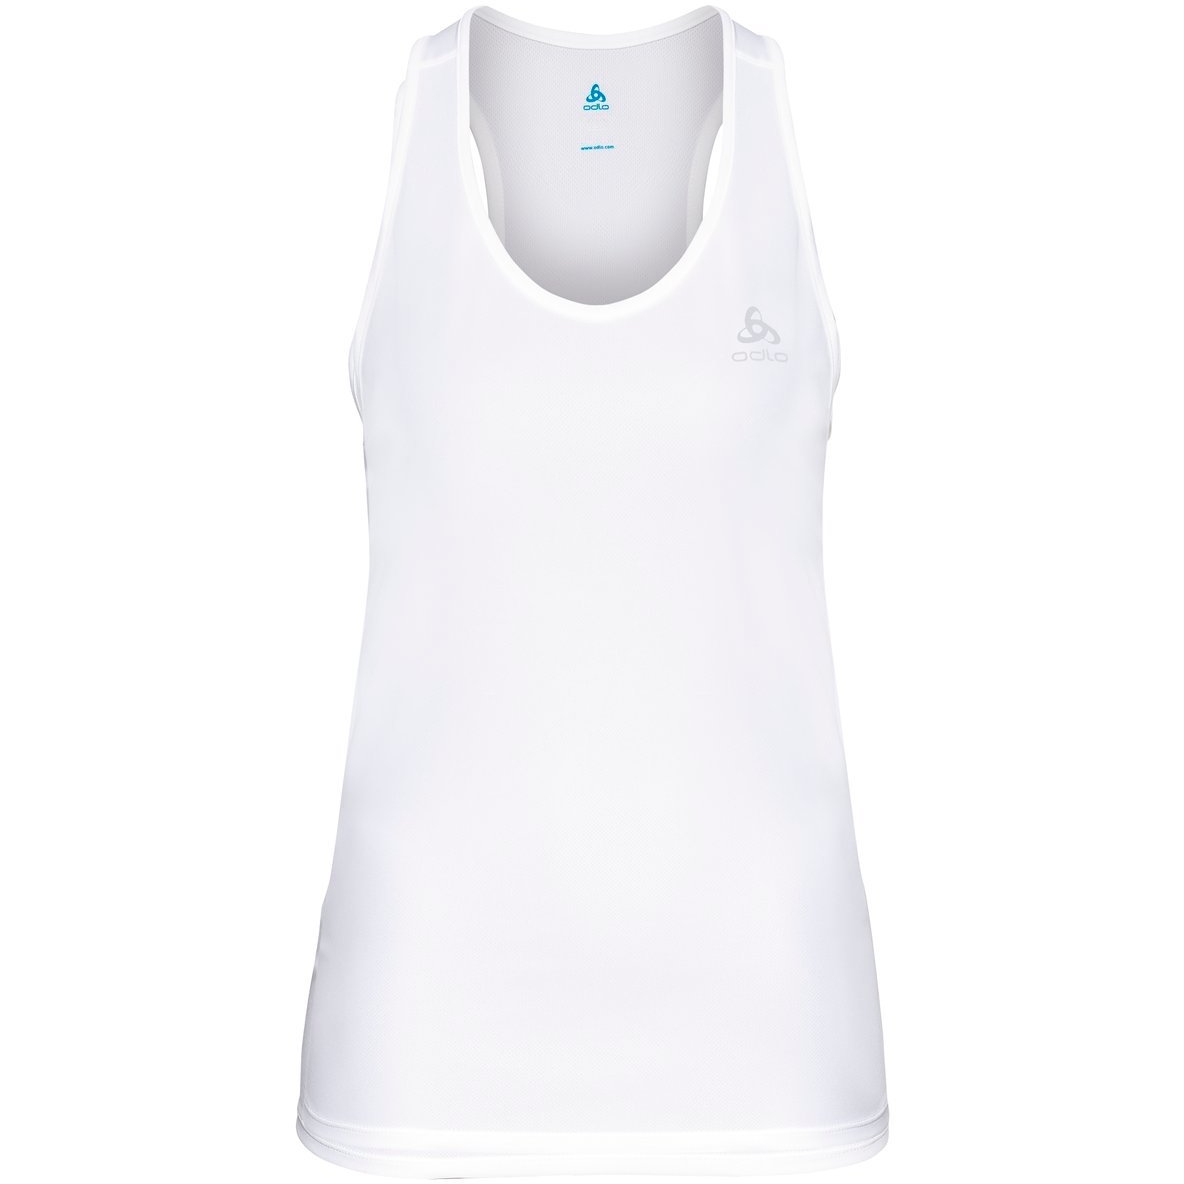 Produktbild von Odlo Essentials Lauf-Top Damen - weiß